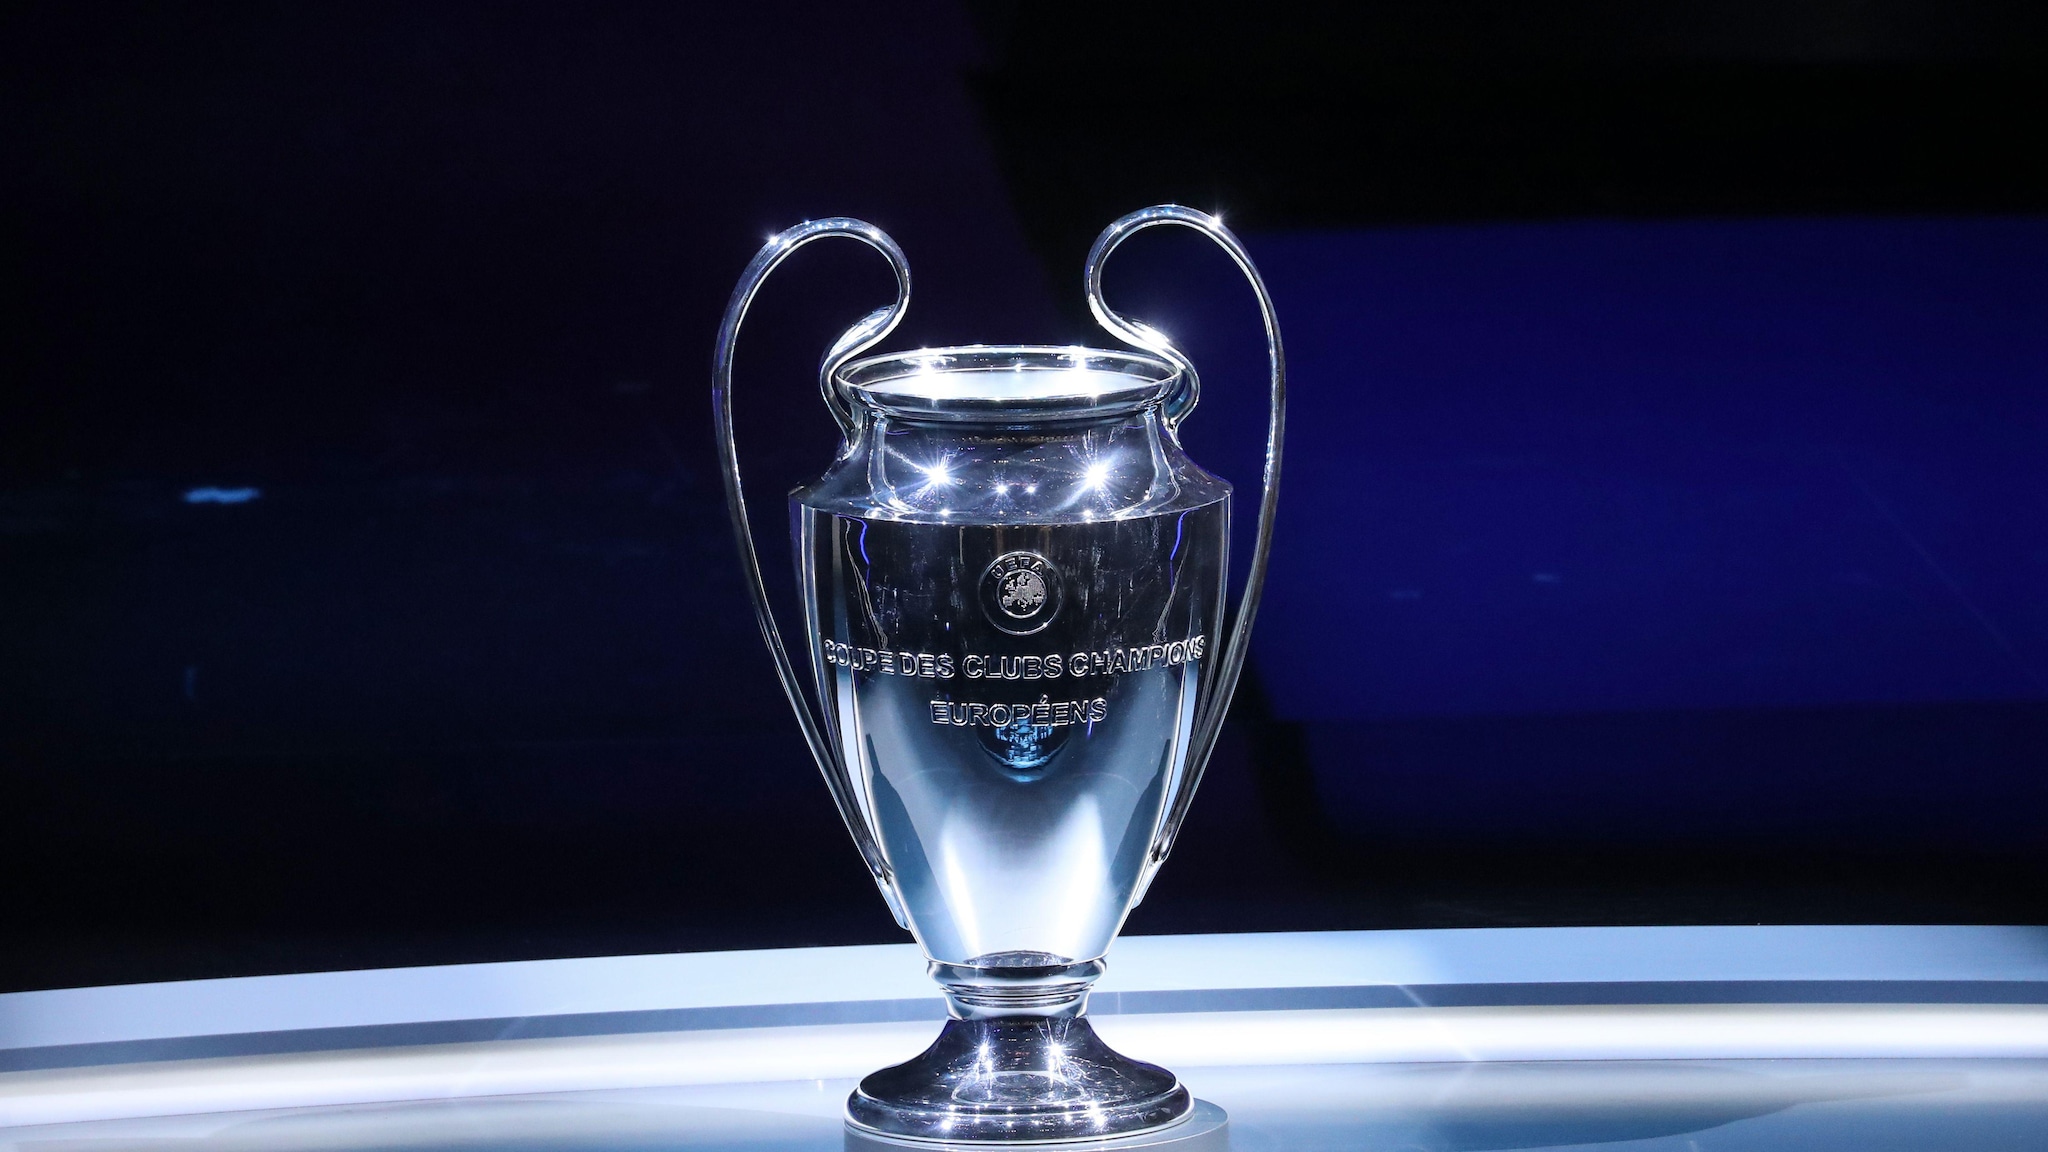 Le trophée de l'UEFA Champions League